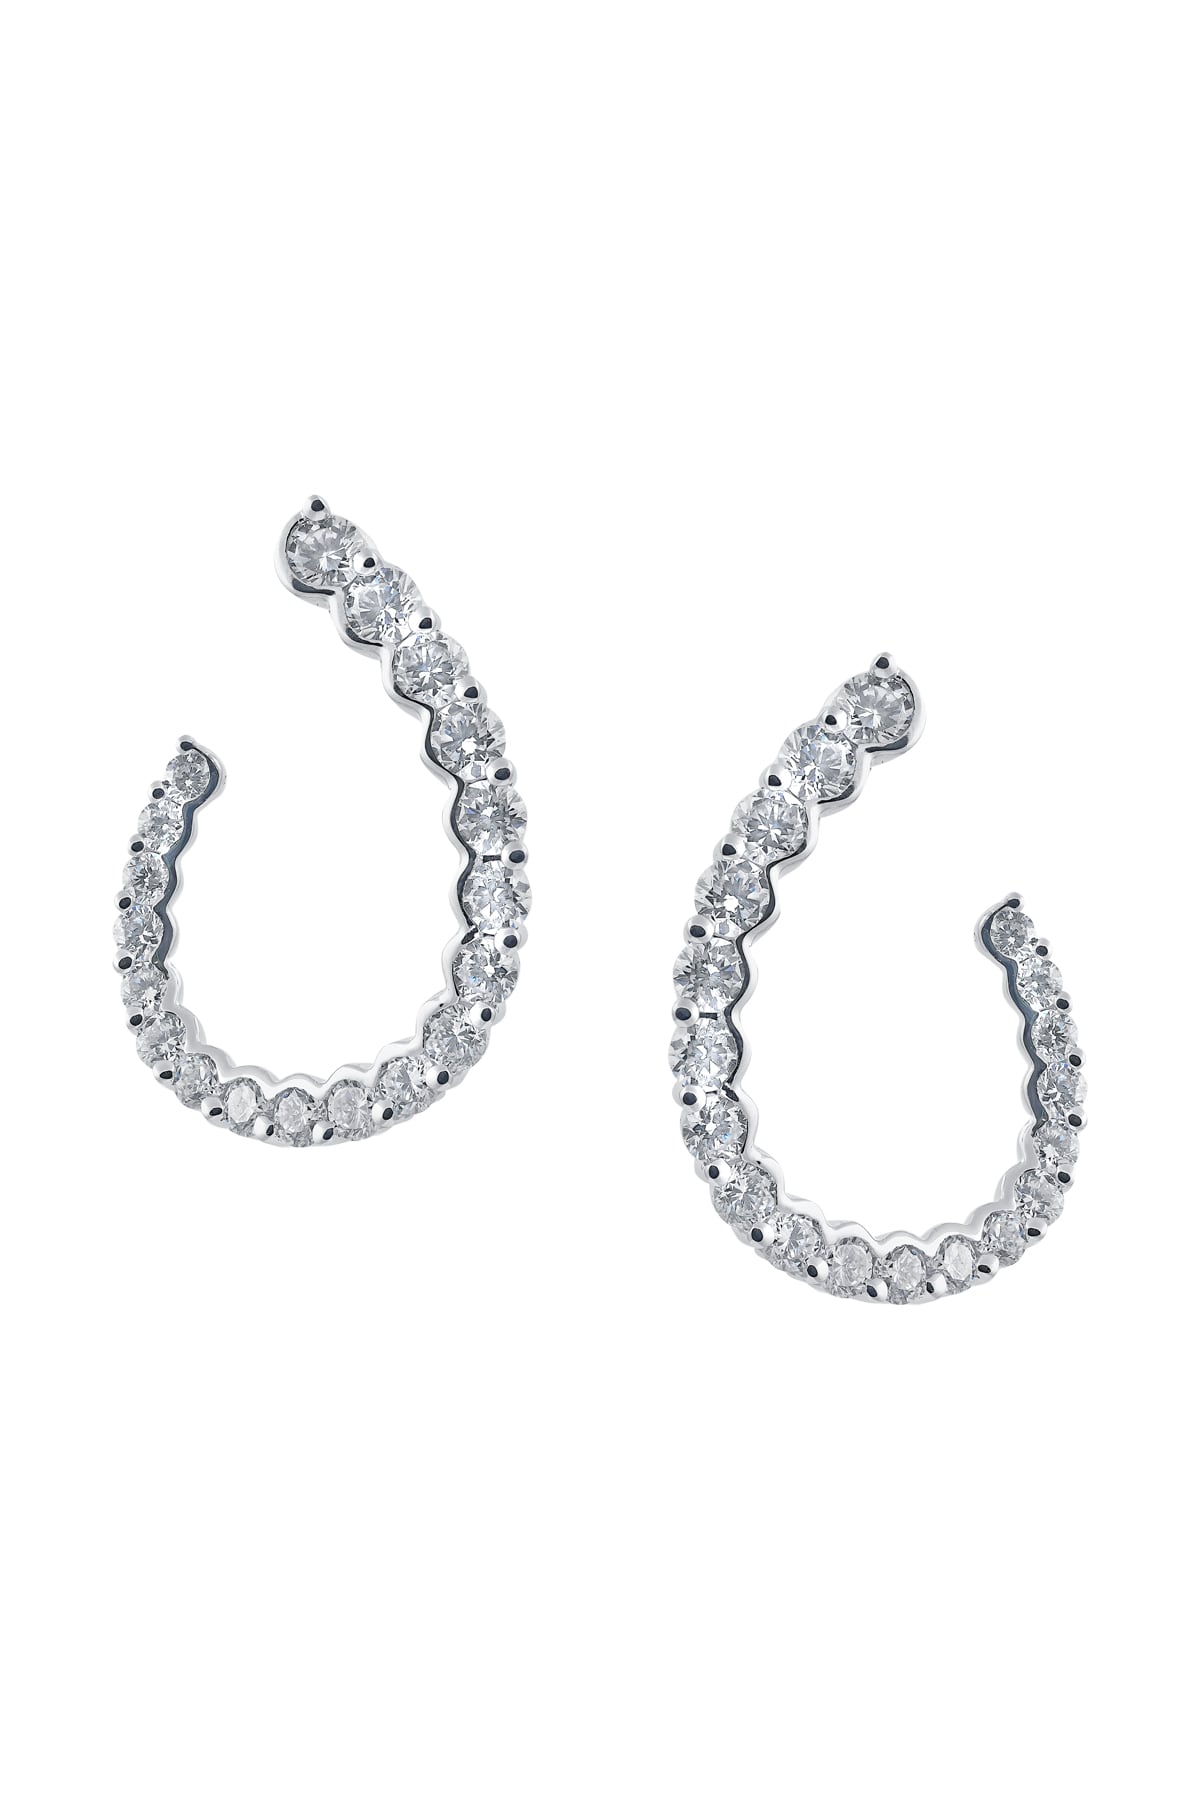 Offset Semi-Circular Diamond Drop Earrings from LeGassick.